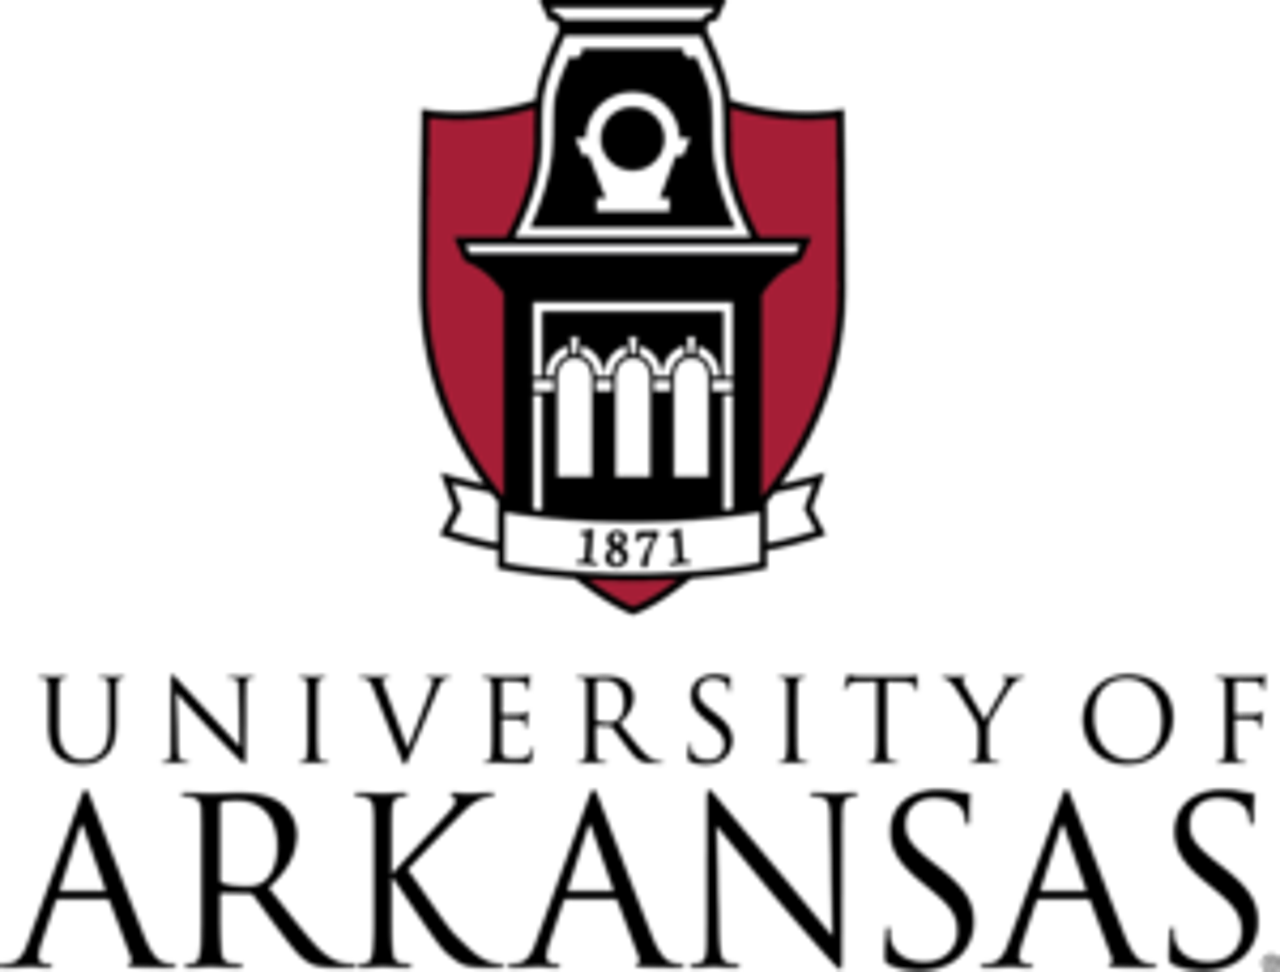 UA_Logo